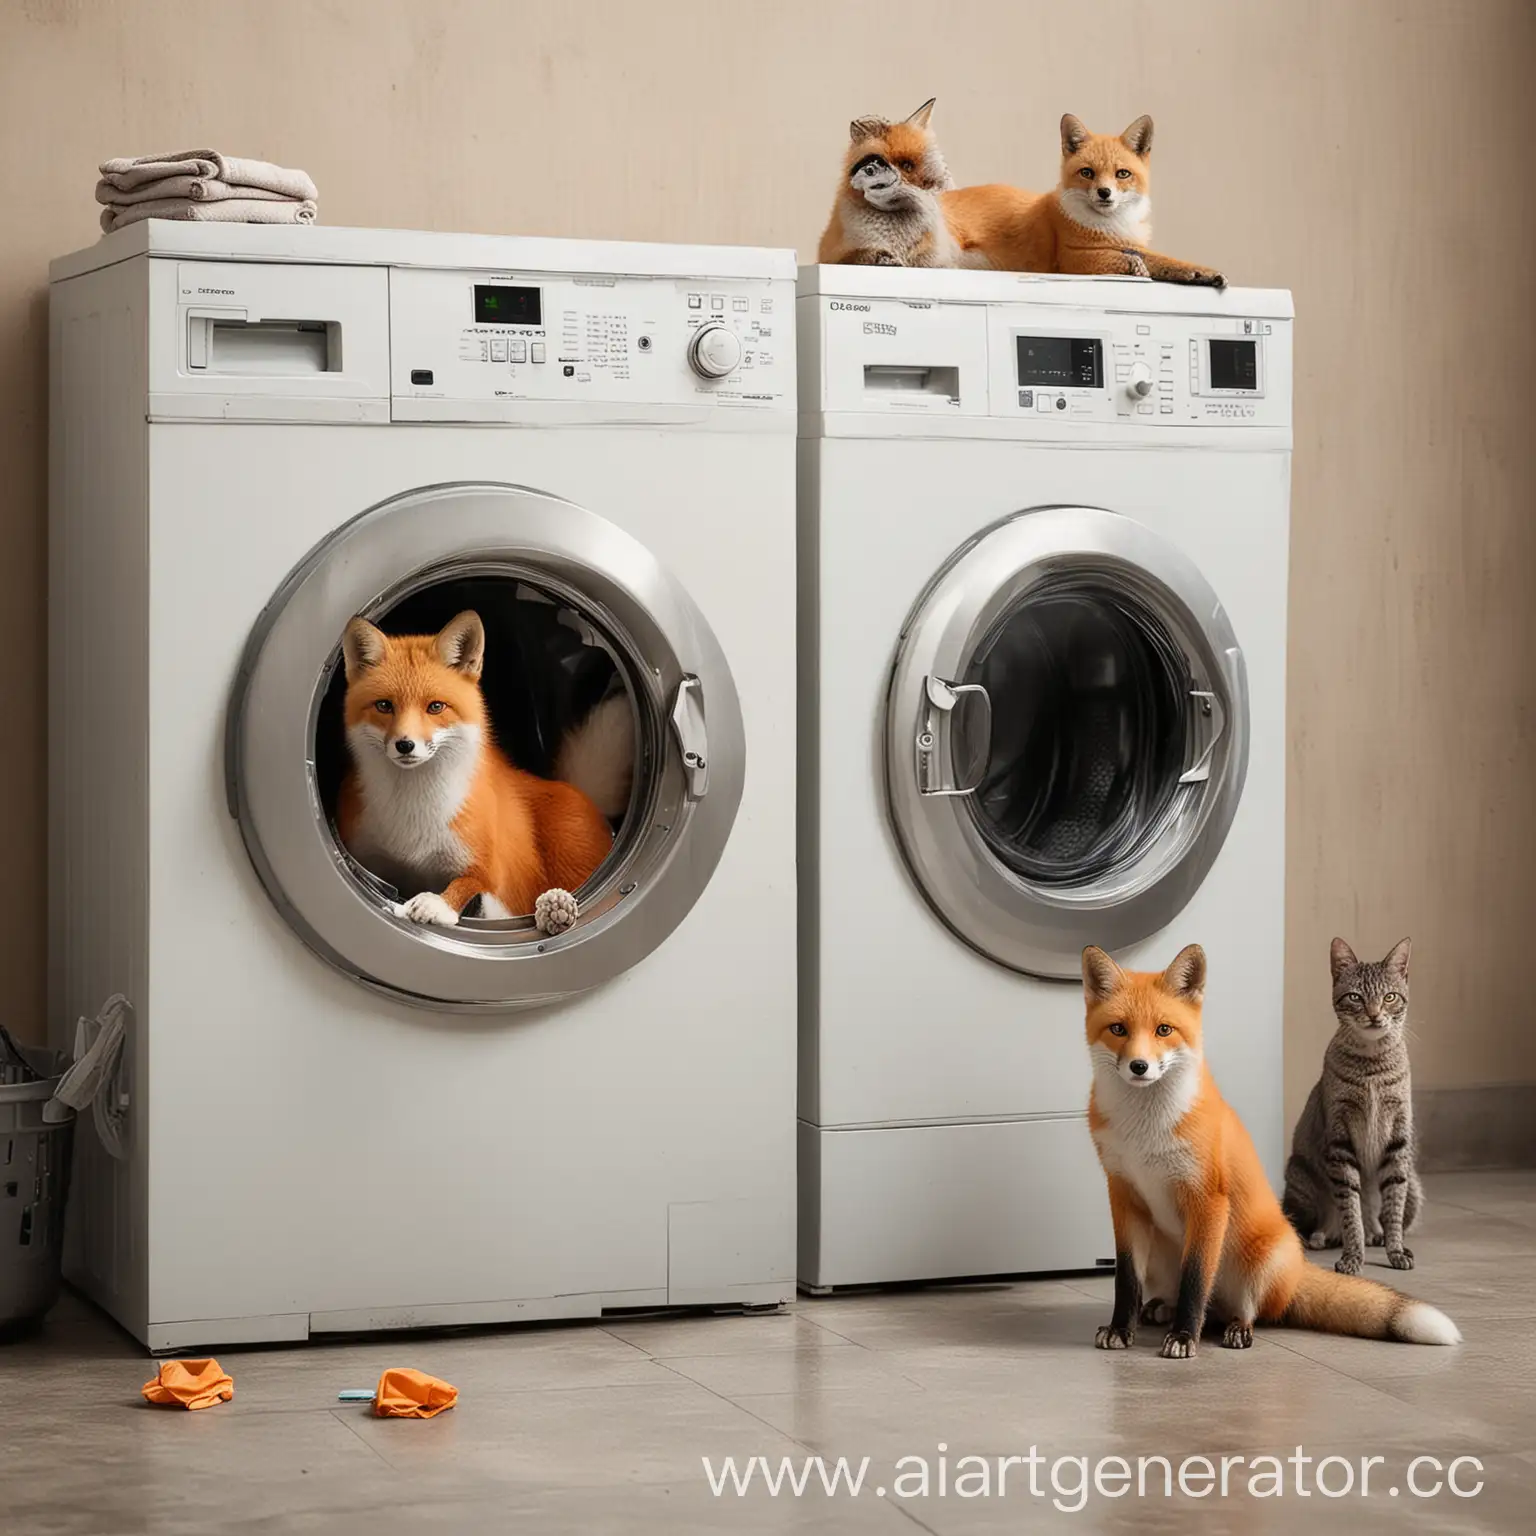 животное лиса и коты рядом со стиральной машиной